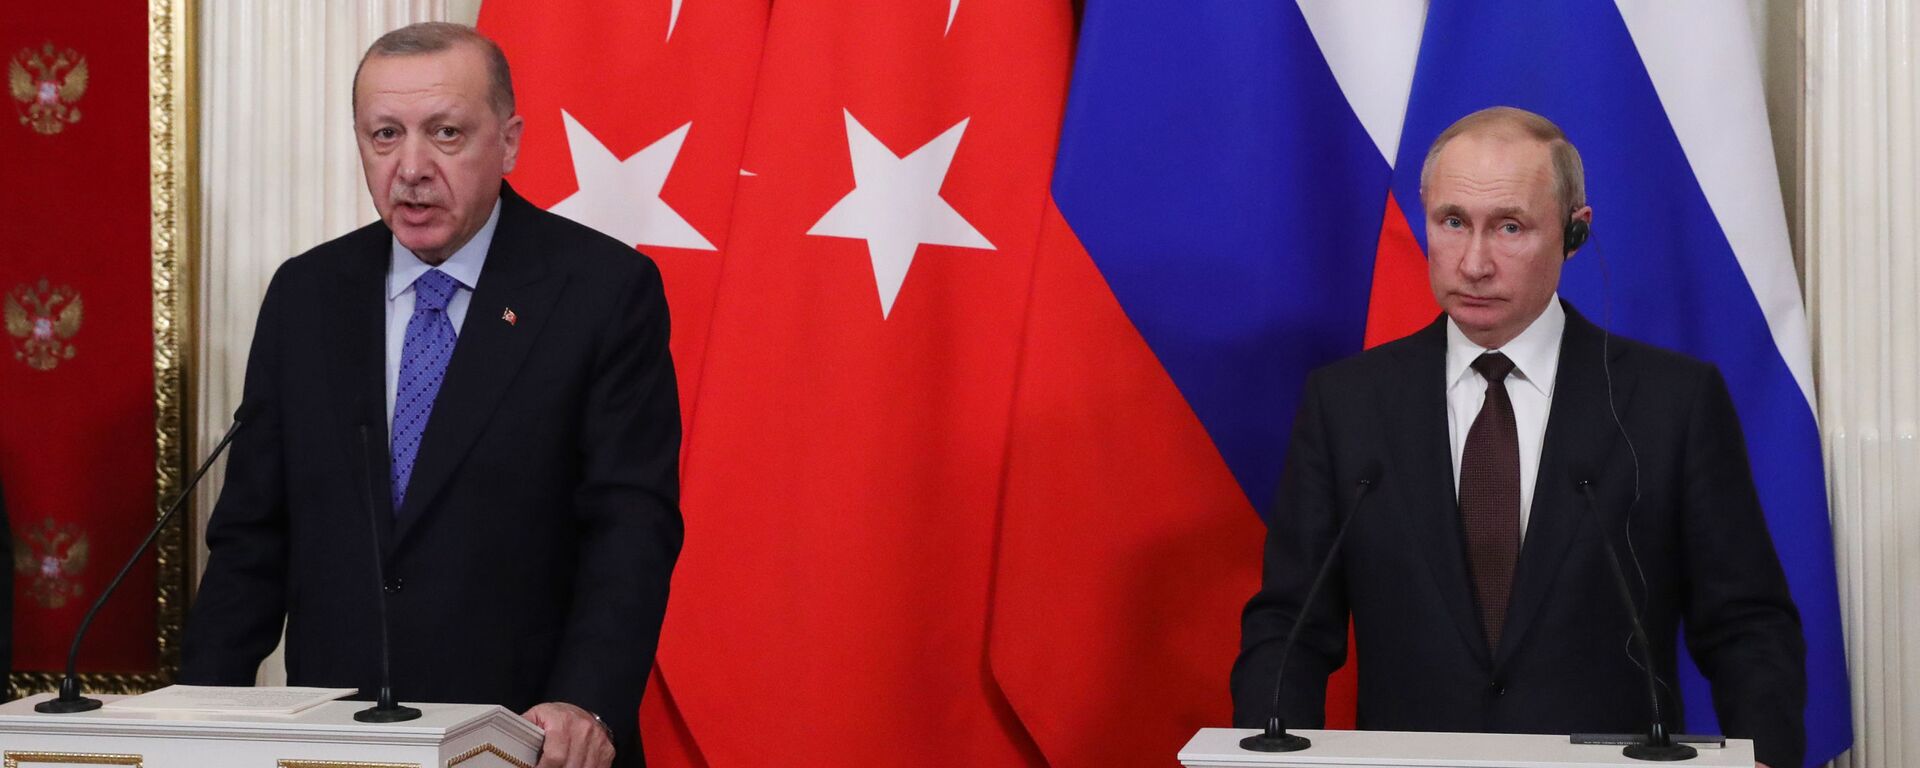 Cuộc họp báo chung sau cuộc gặp giữa Tổng thống Thổ Nhĩ Kỳ Recep Tayyip Erdogan và Tổng thống Nga Vladimir Putin - Sputnik Việt Nam, 1920, 24.07.2023